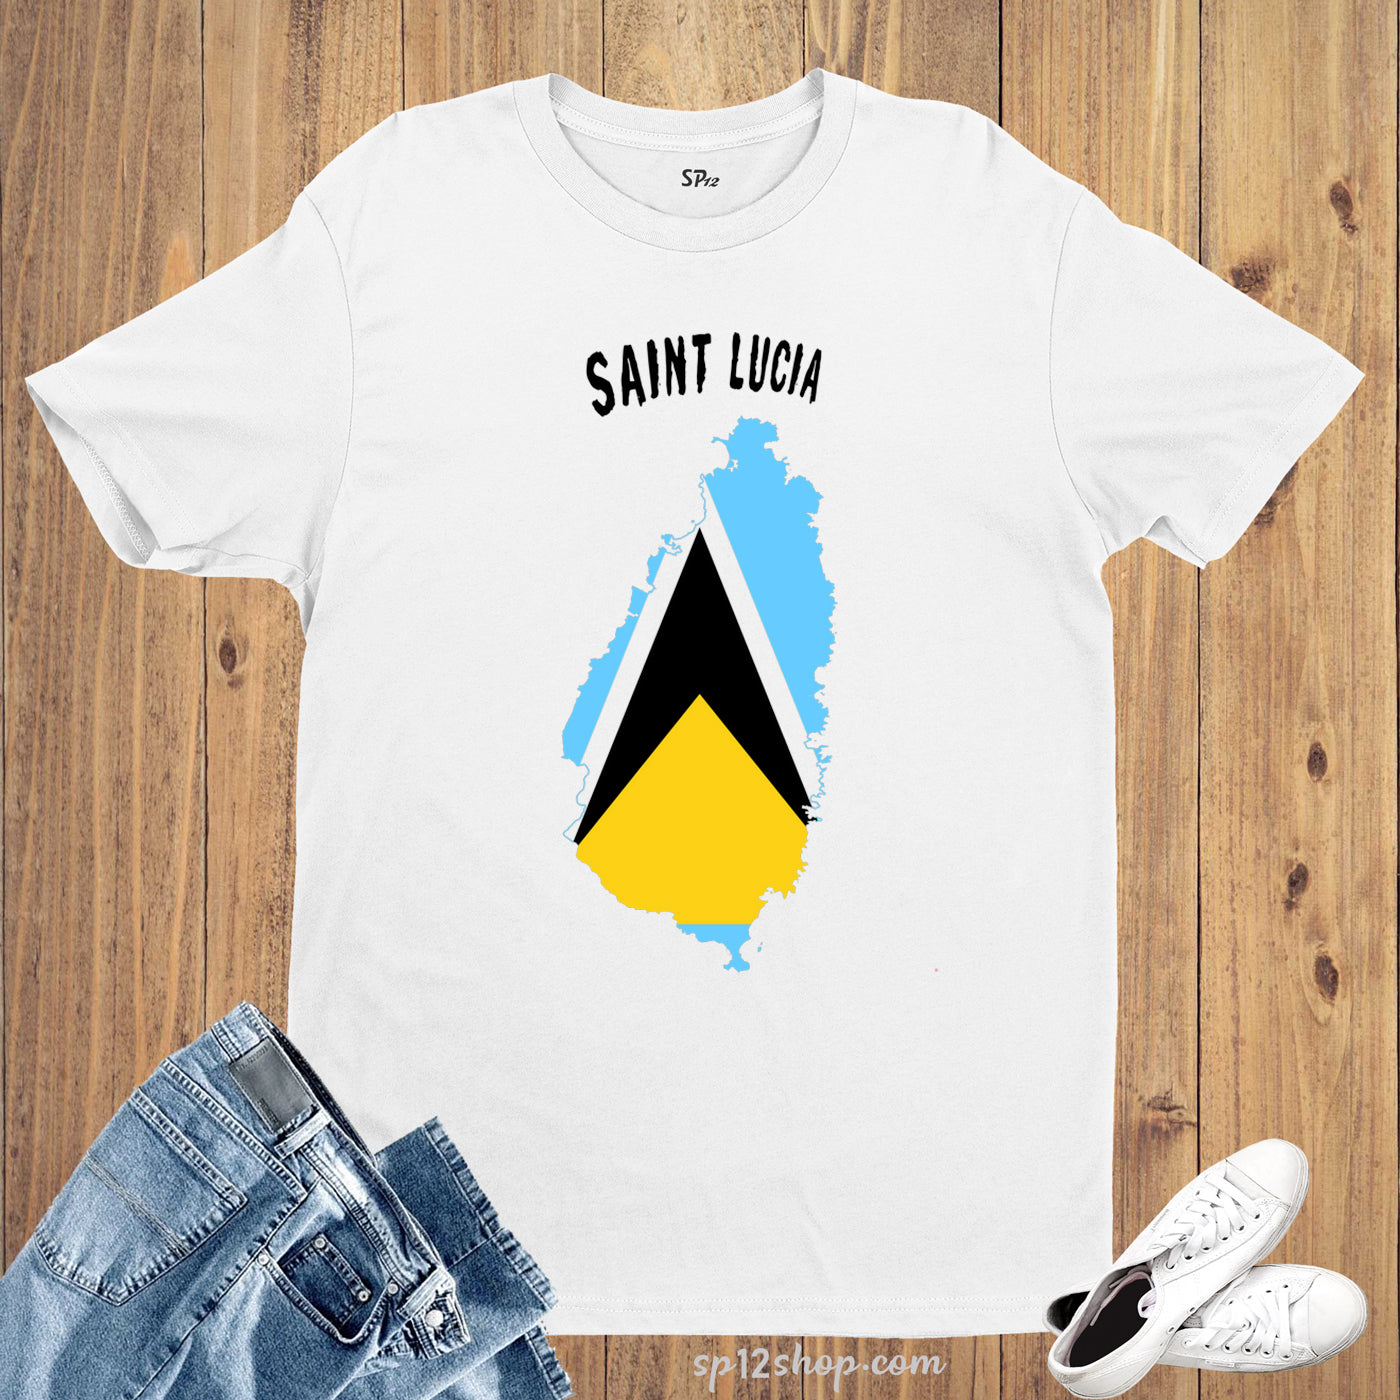 Saint Lucia Flag T Shirt Olympics FIFA World Cup Country Flag Tee Shirt